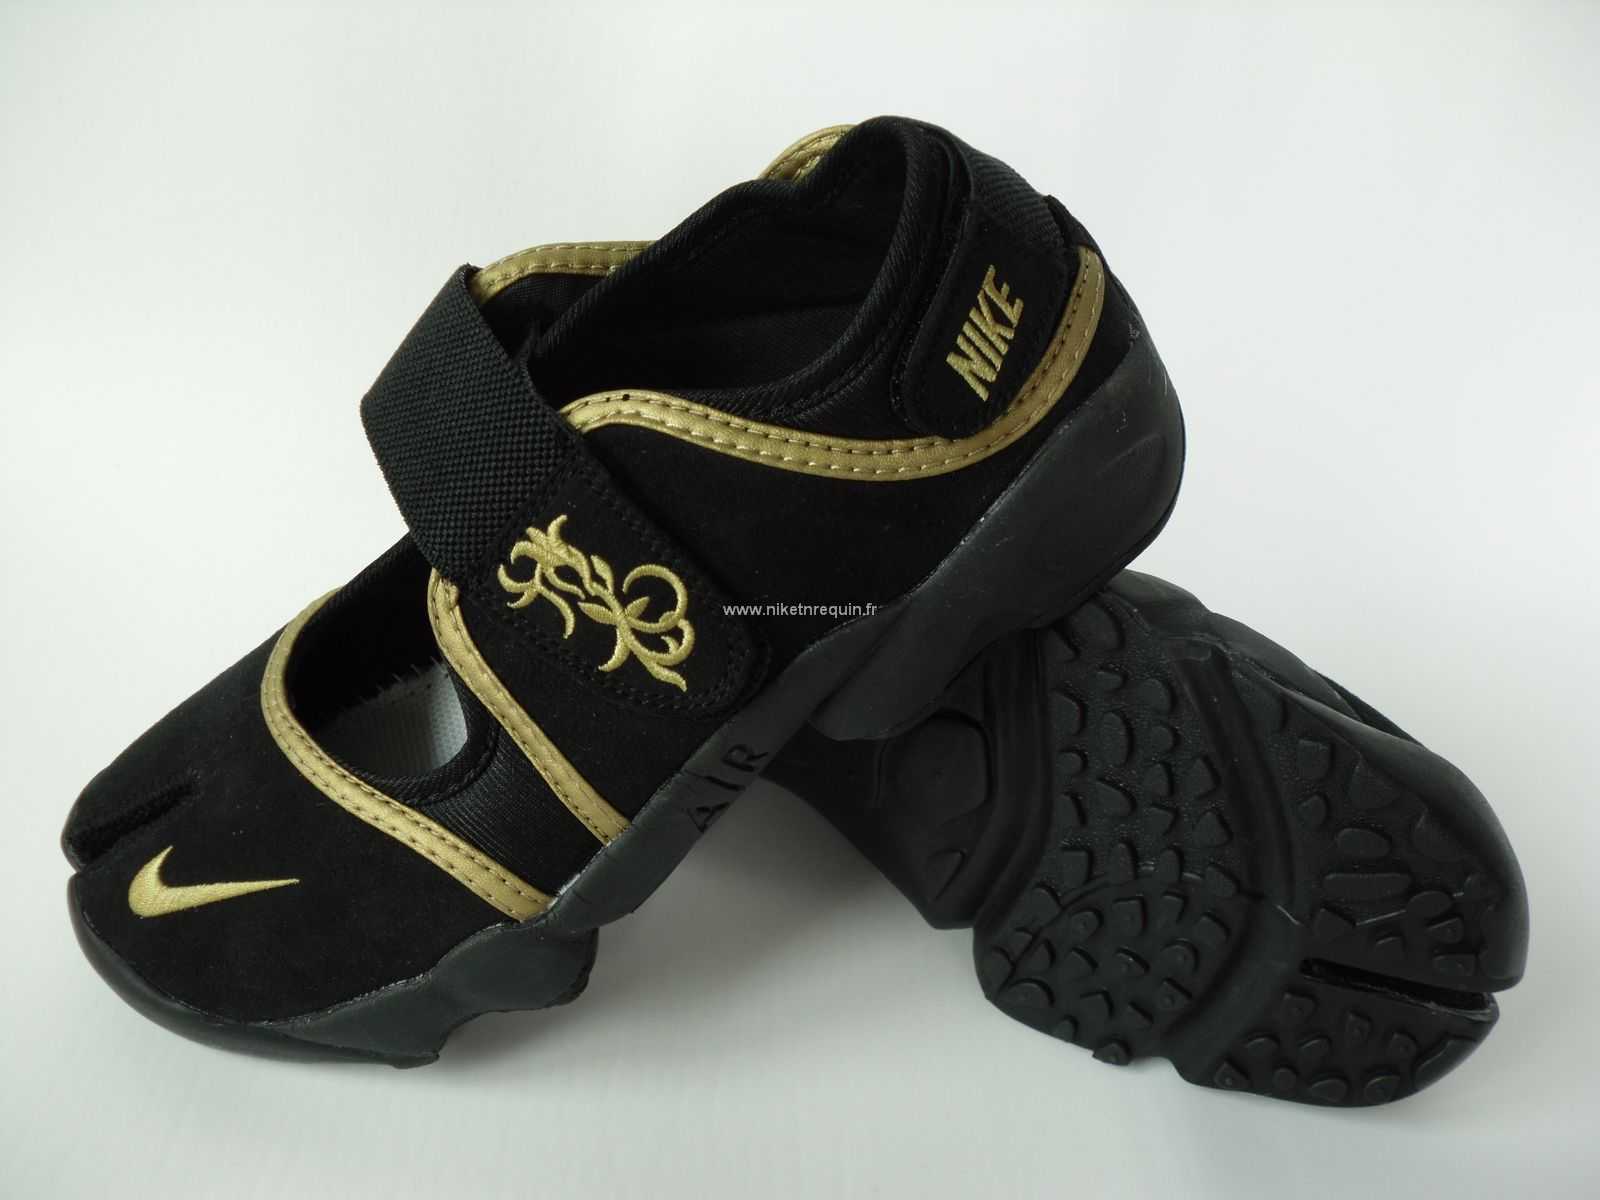 Nouveau Modele De Chaussures Nike Rift Acclamant Shox Noir